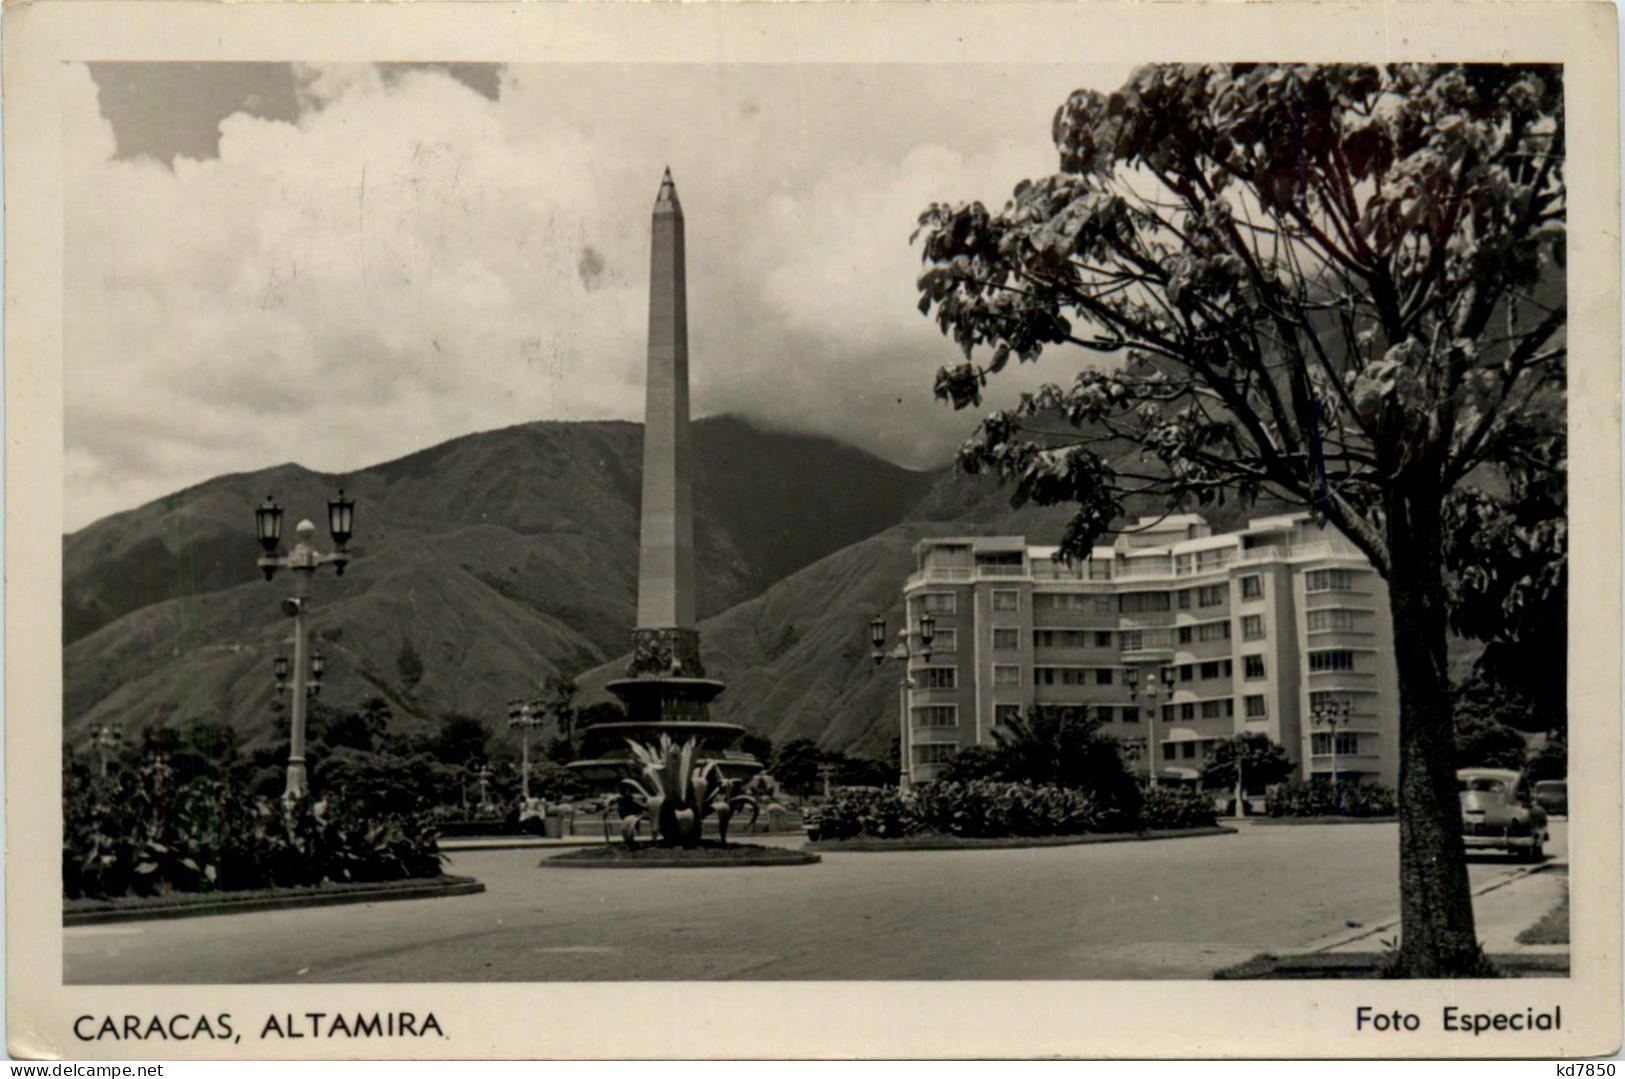 Caracas - Altamira - Venezuela